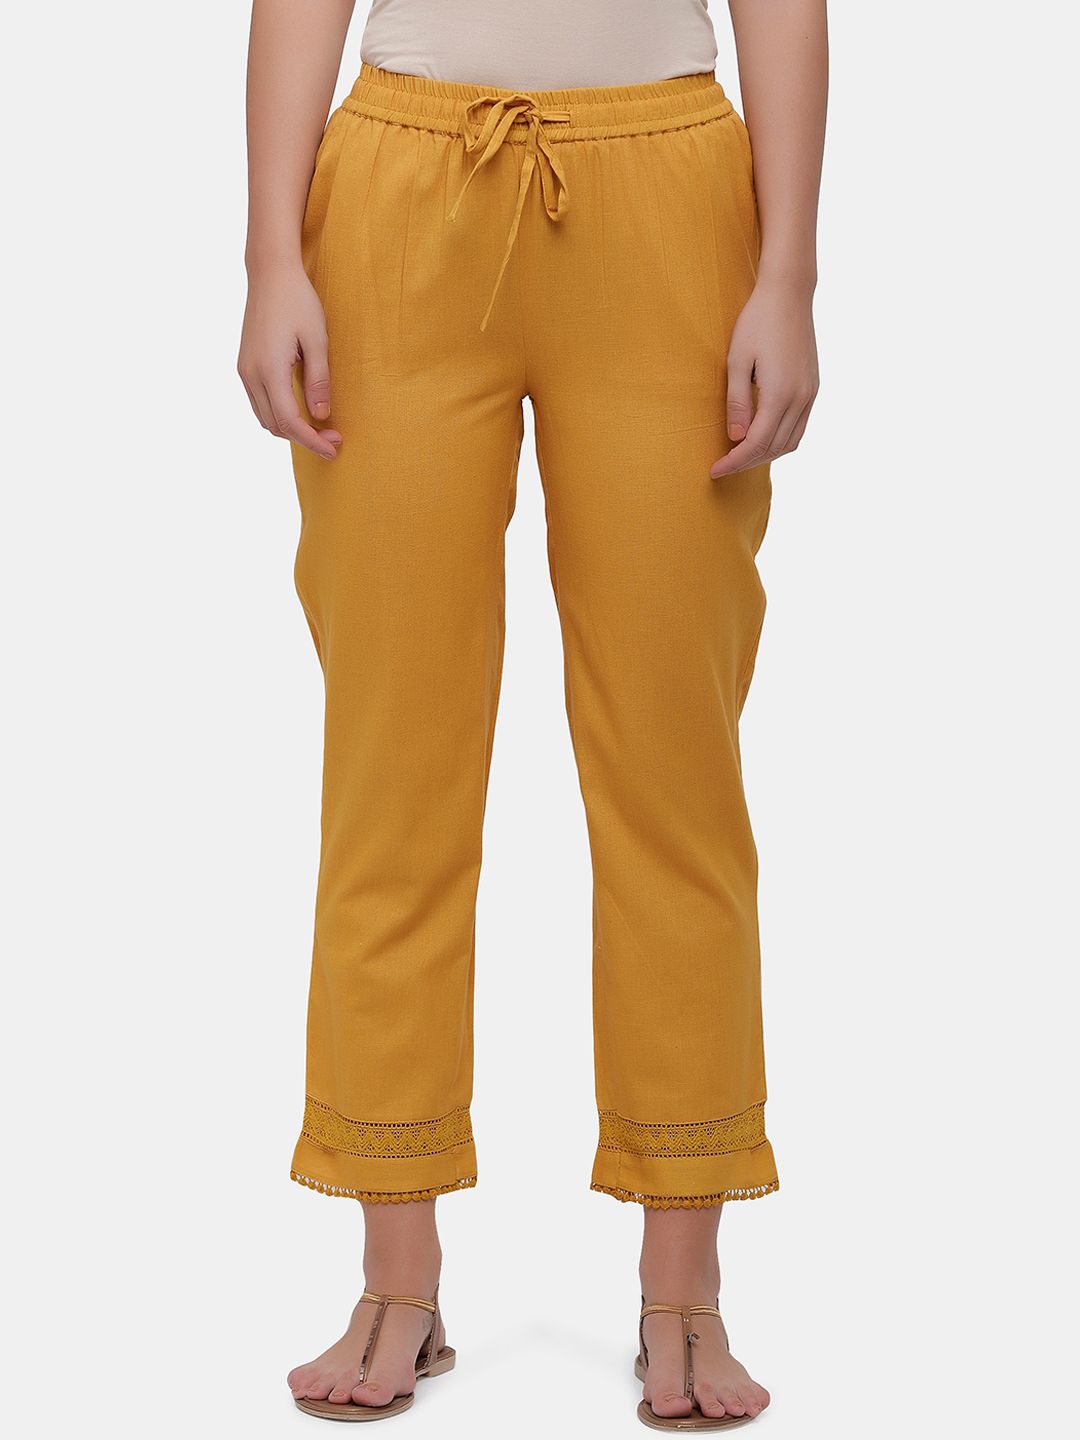 IMARA Women Mustard Yellow Solid Regular Trousers Price in India